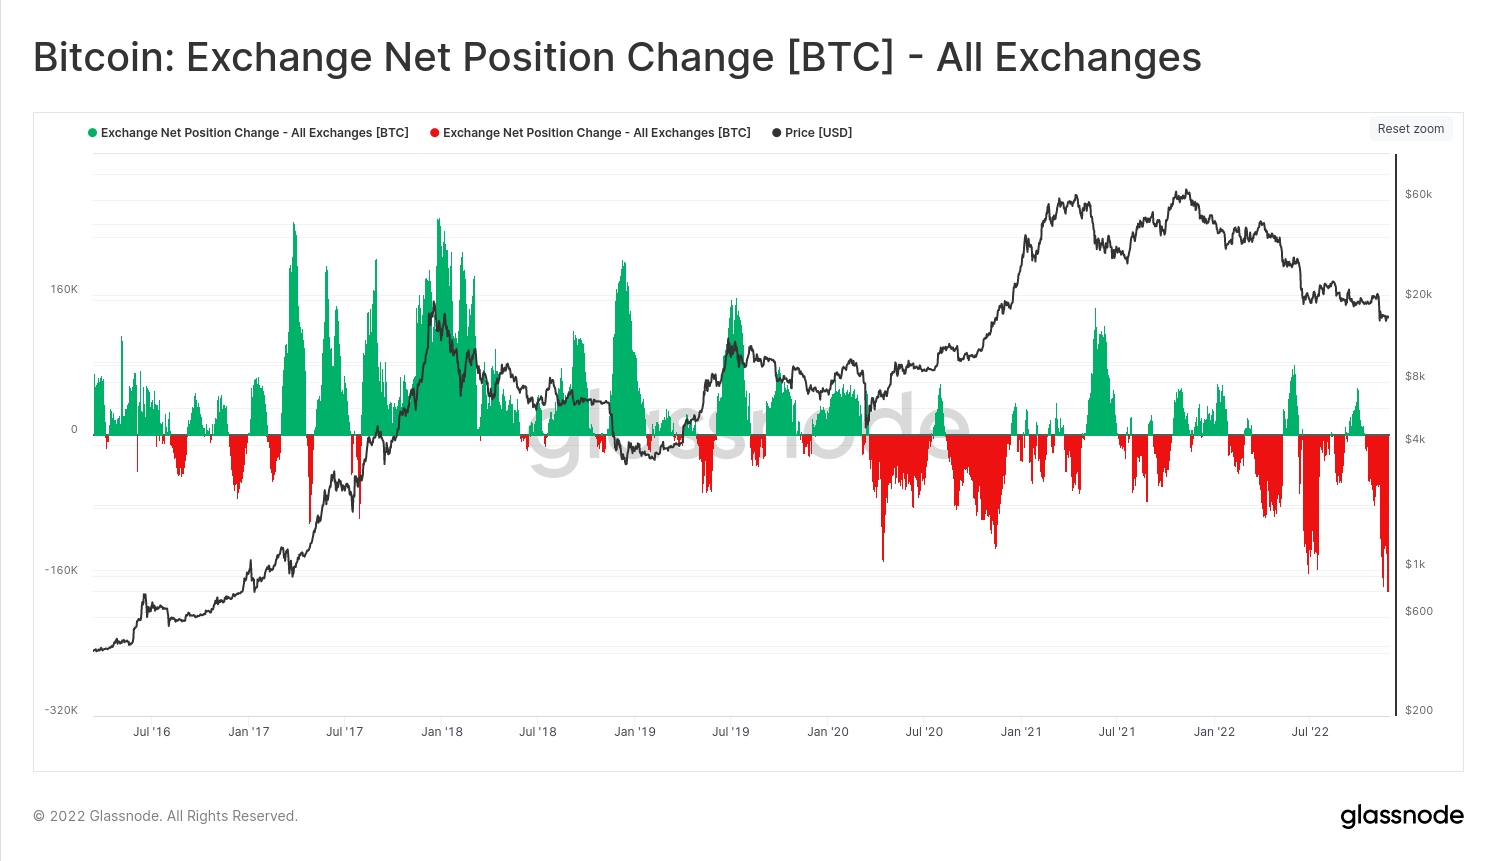 Bitcoin exchange net position change